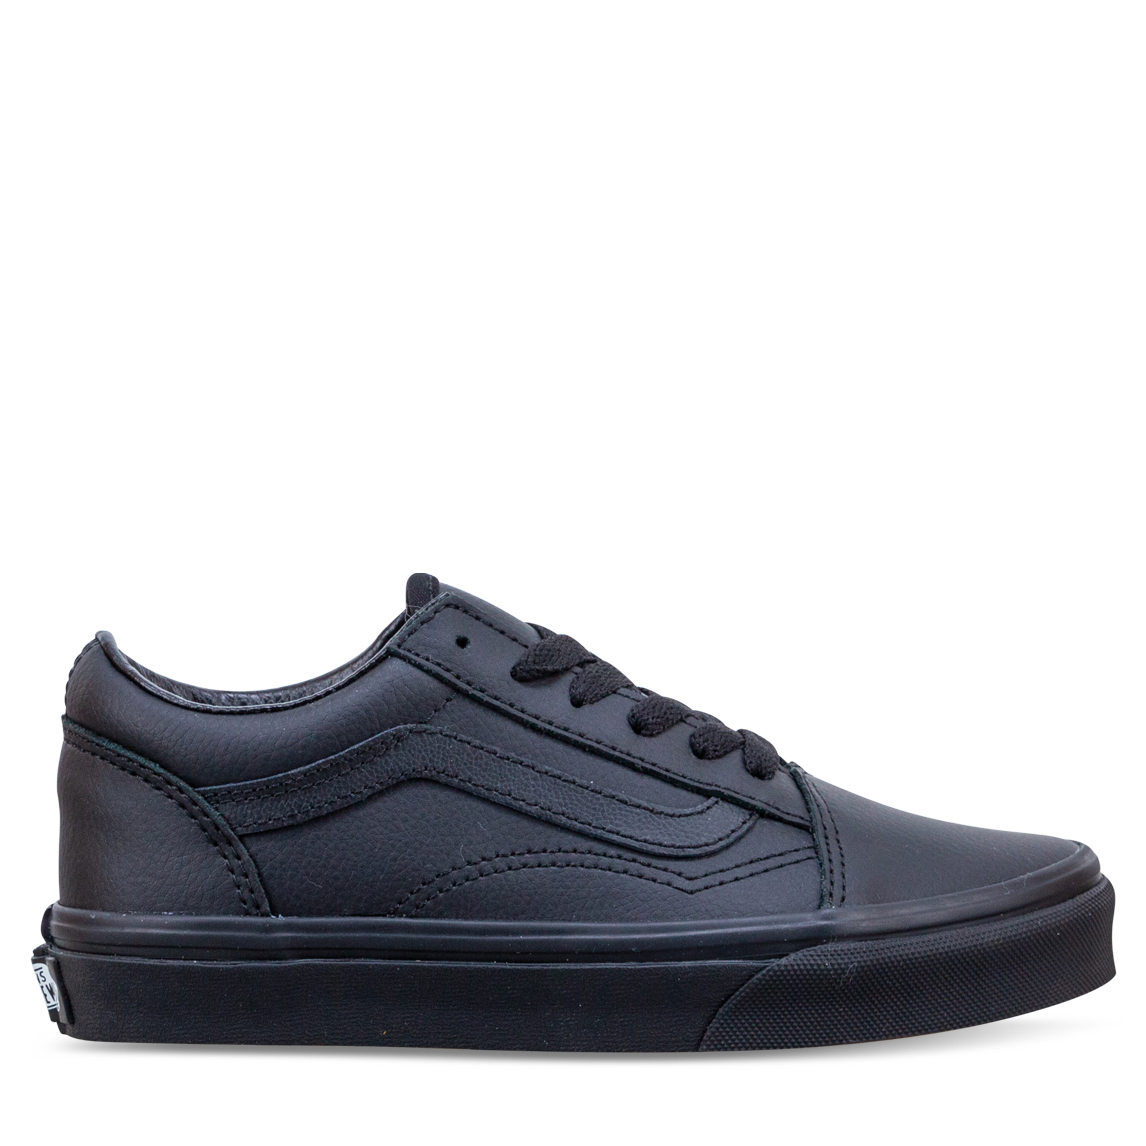 black leather vans school shoes